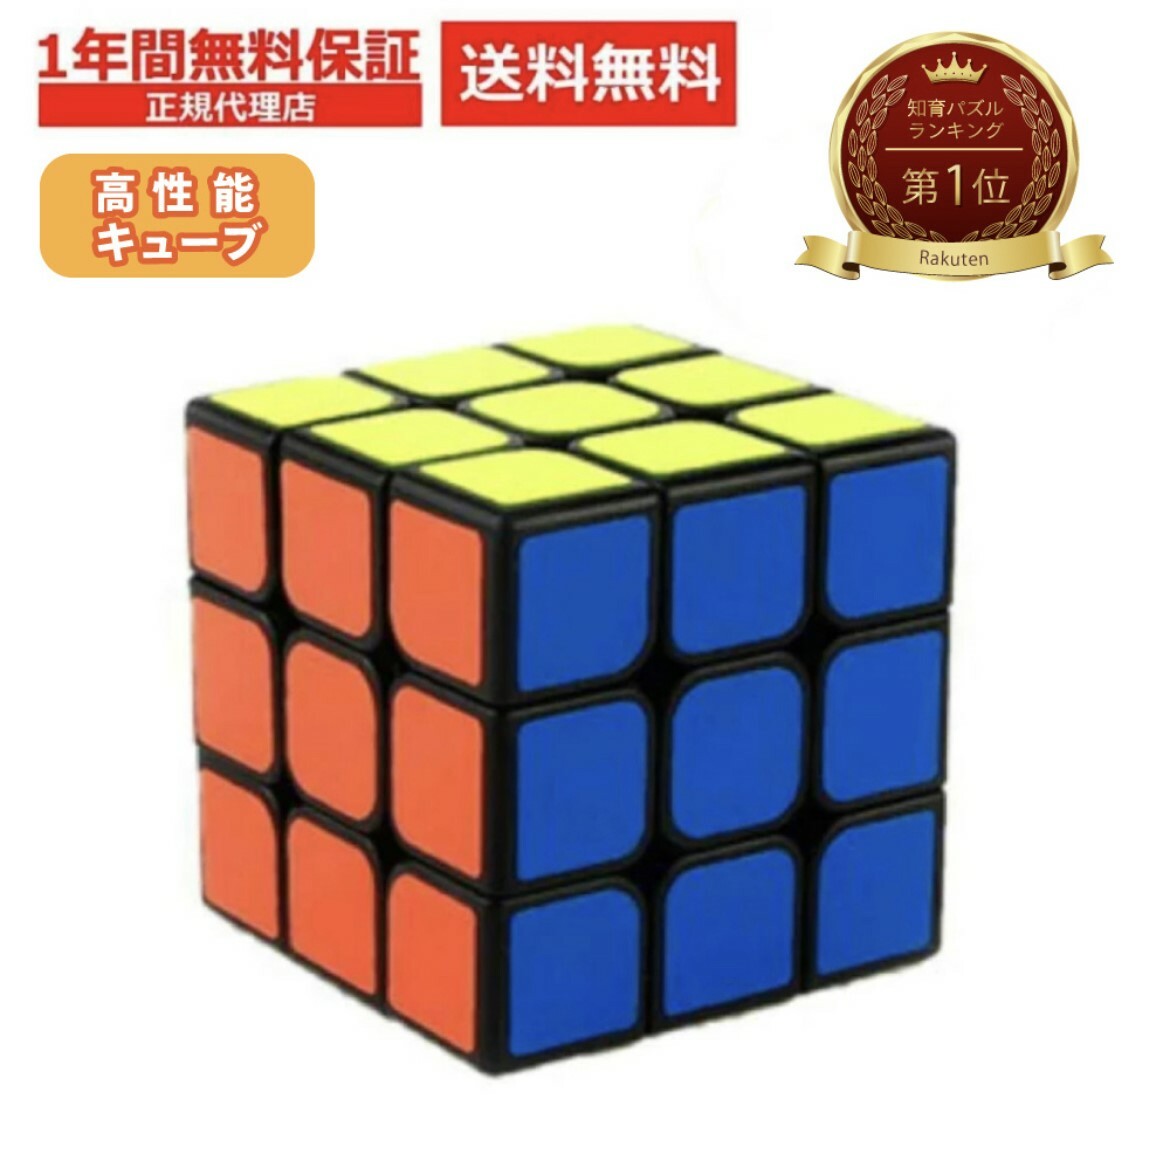 【楽天1位】MoYu 魔域文化 正規品 公式 ルービックキューブ 3×3 パズルゲーム 競技用 スピードキューブ 知育玩具 初心者 子供用 ジグソーパズル 考え方 攻略 脳トレ なめらかなめらか 特殊 カーボンファイバー質感 立体パズル 耐衝撃性 Cube